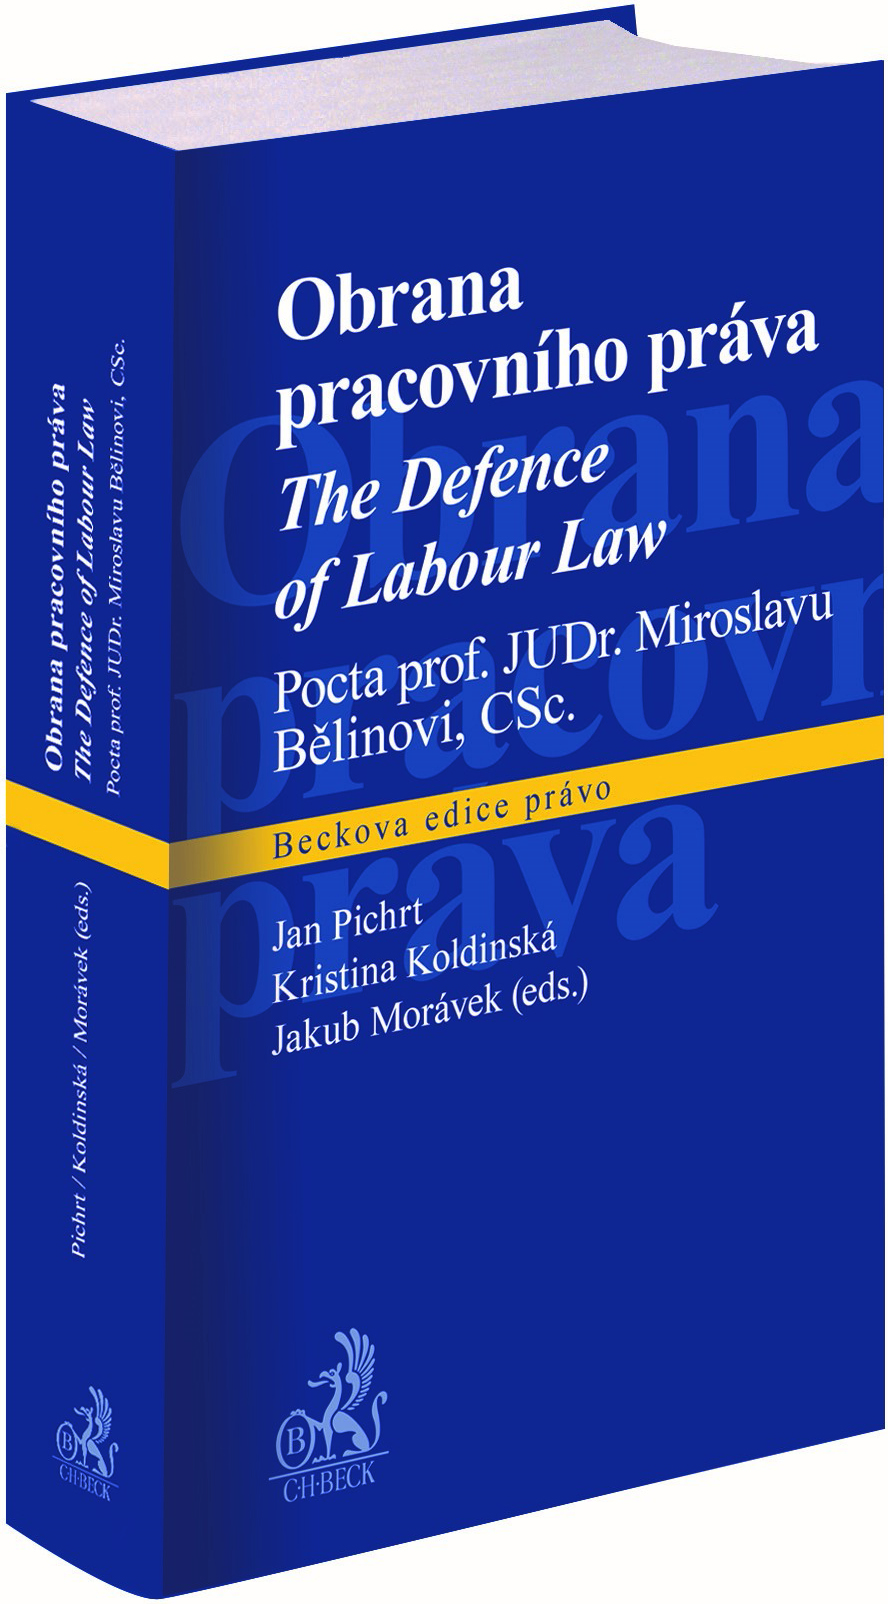 Obrana pracovního práva, The Defence of Labour Law. Pocta prof. JUDr. Miroslavu Bělinovi, CSc.